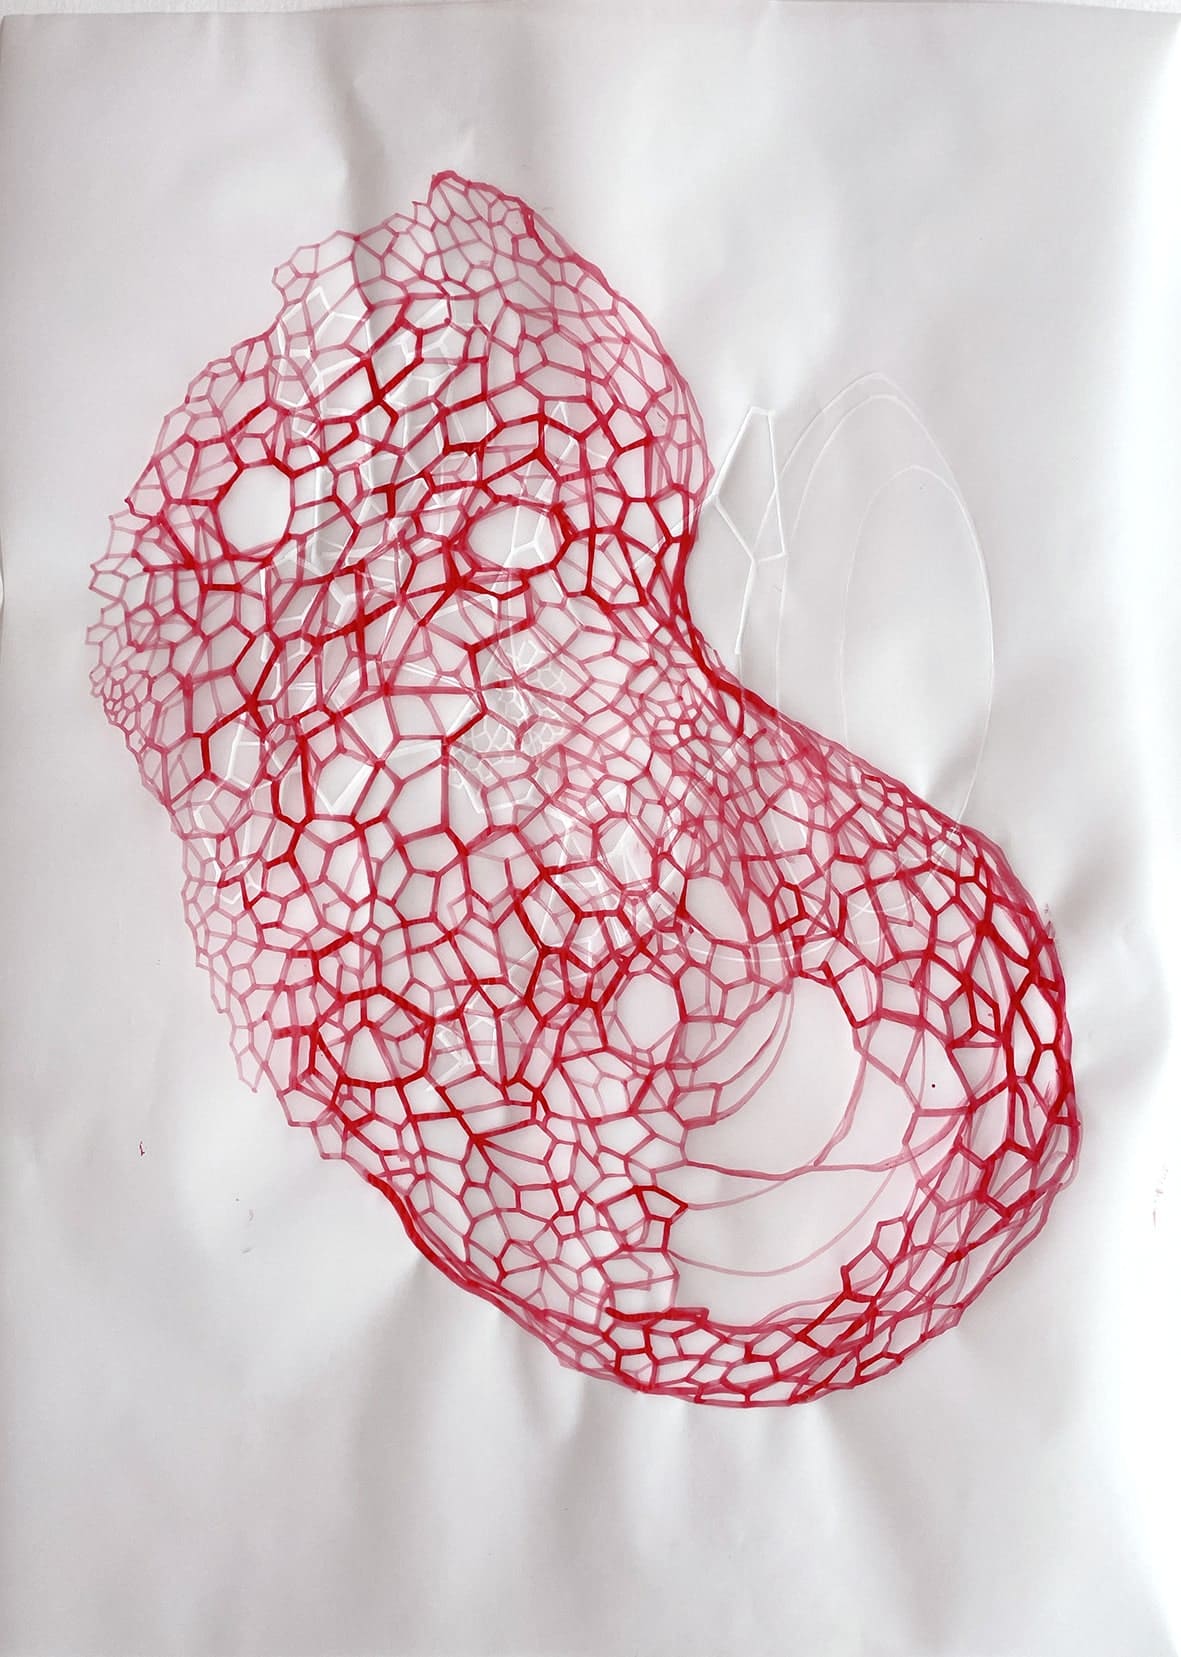 Micro-bios II, V, Jo Milne. Tècnica mixta sobre papel vegetal, 59 x 42 cm